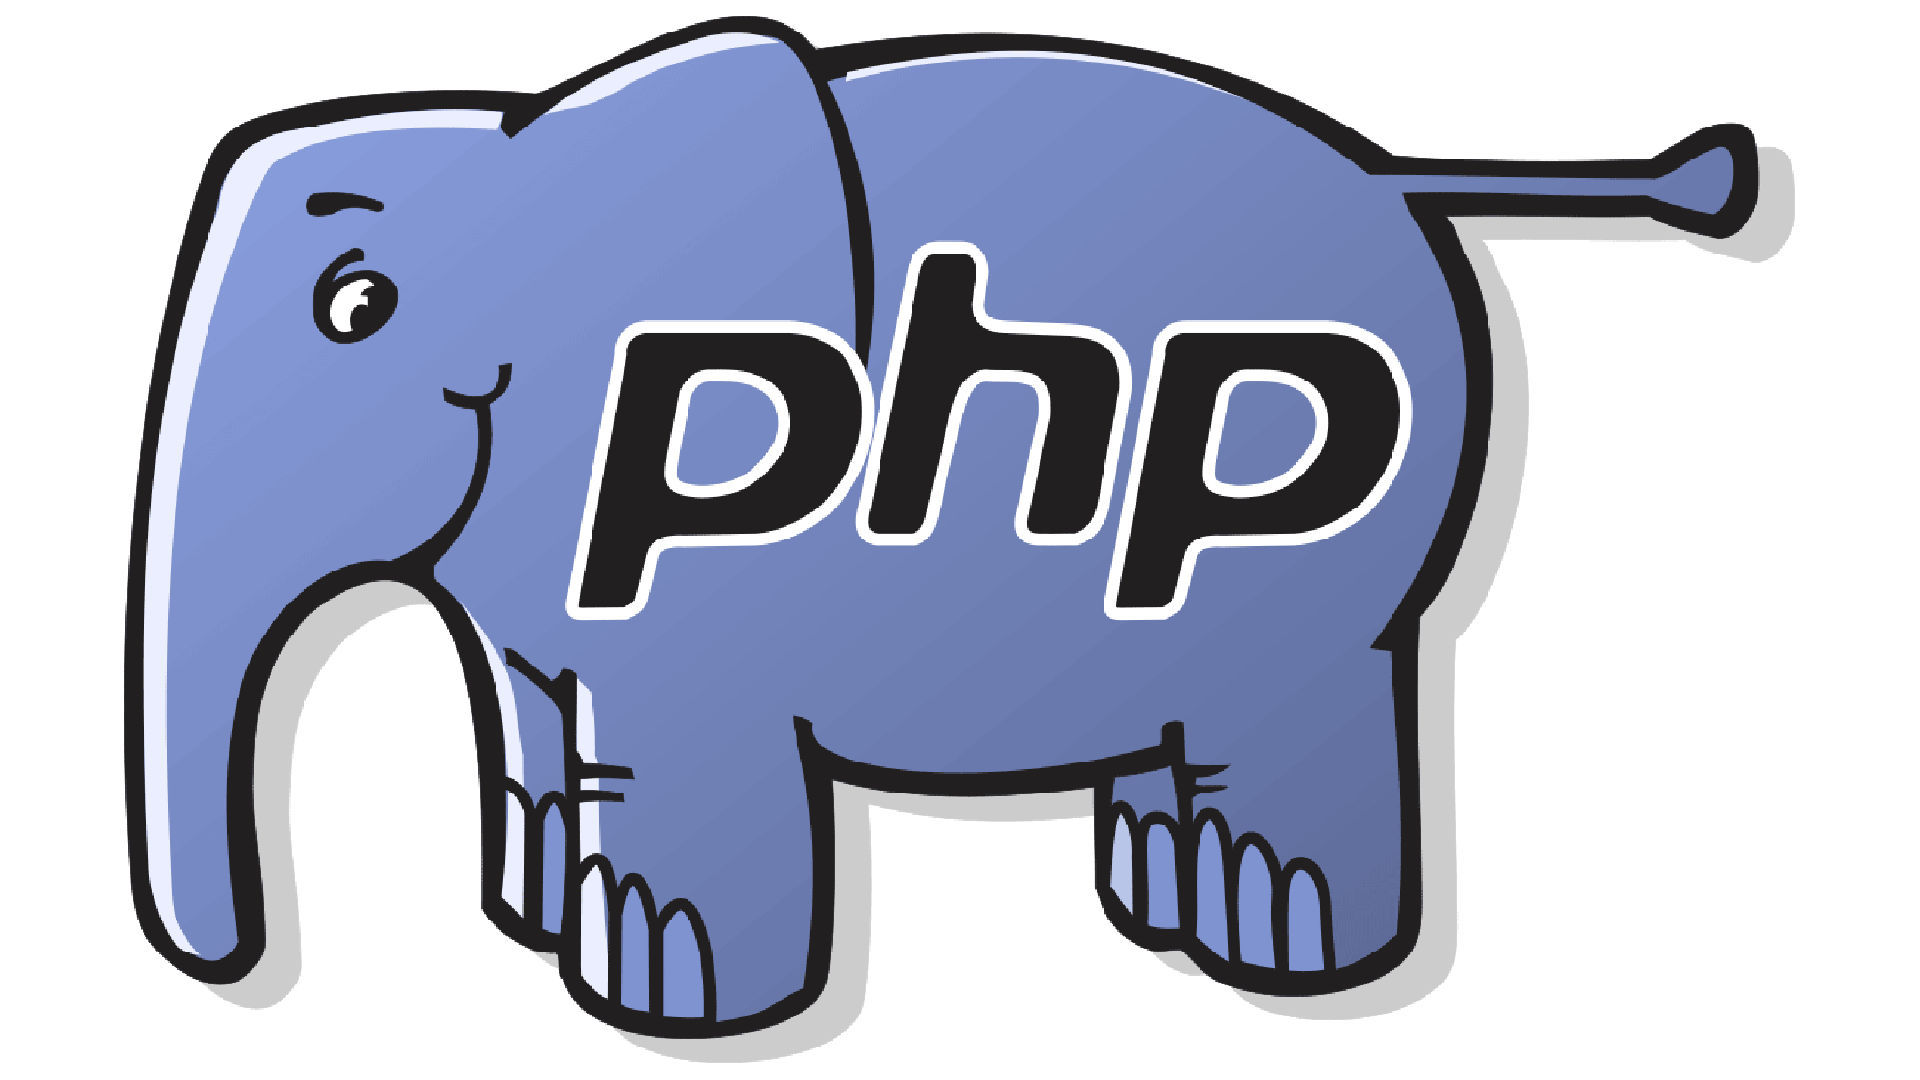 زبان php و مزیت های آن در طراحی سایت چیست؟ | کمپین آمنوزشی بی لرن